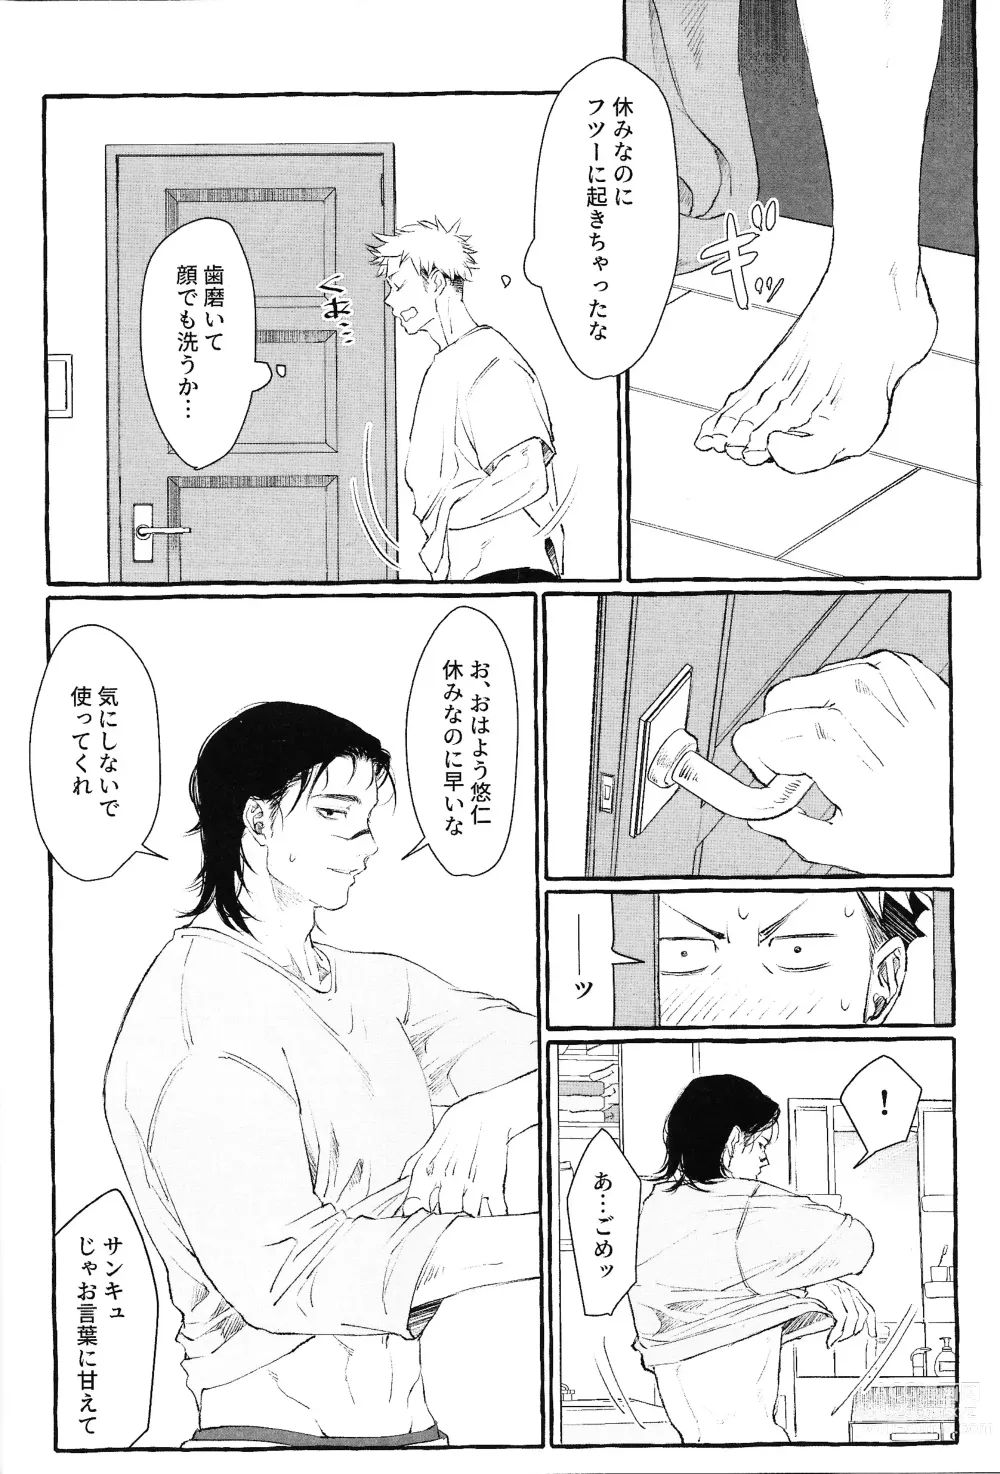 Page 21 of doujinshi Otouto no Kimochi